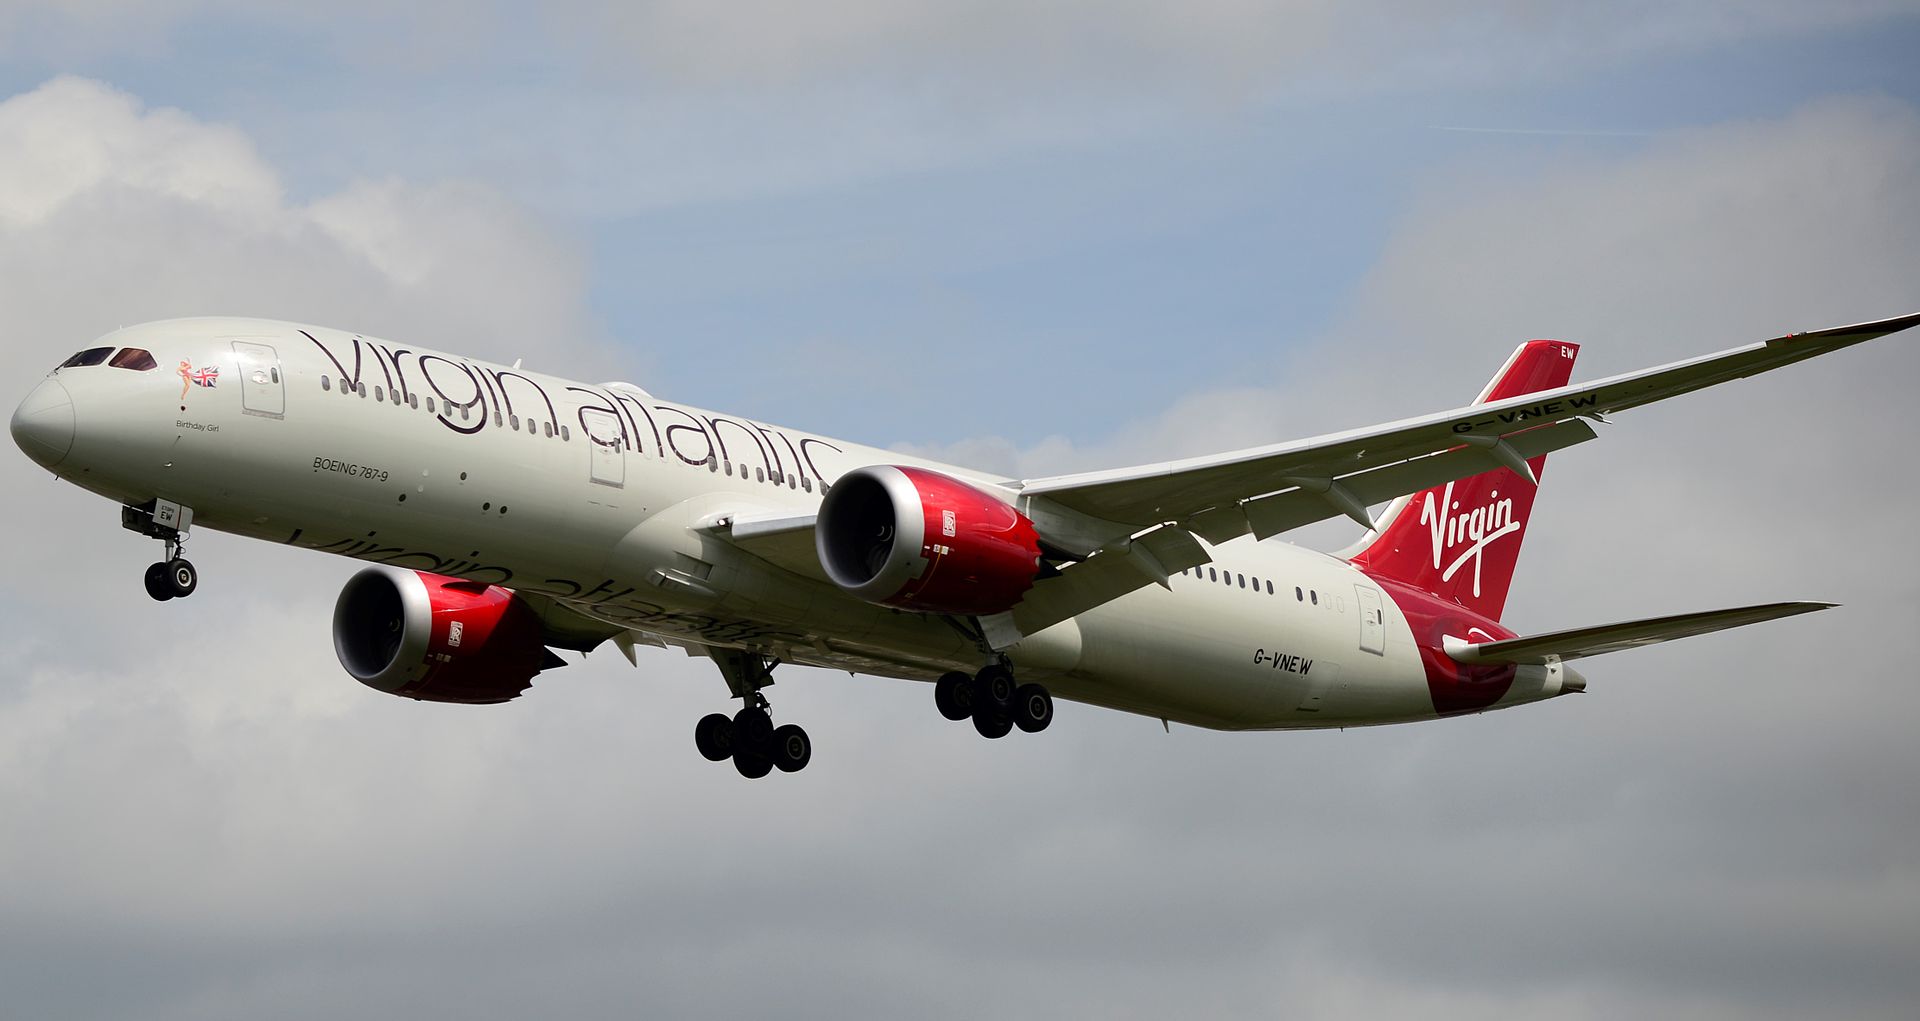 Cette image représente un avion Virgin Atlantic Airways qui a été retardé et dont les passagers se demandent s'il peuvent obtenir une indemnisation.